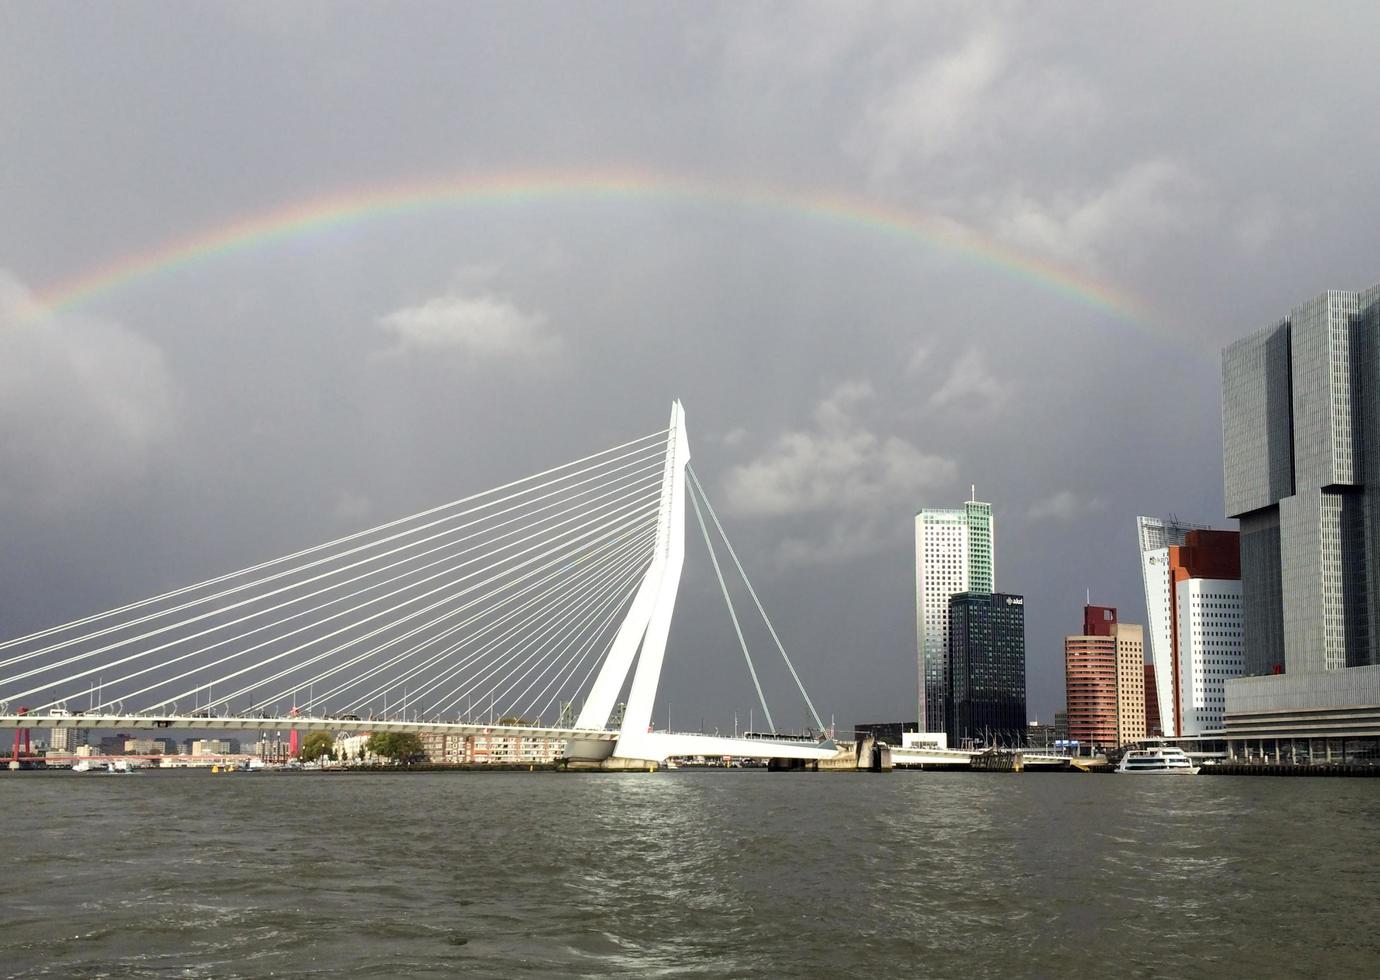 rotterdam, südholland, niederlande, 2019 - ein großer regenbogen spannt sich über die stadt rotterdam, niederlande foto